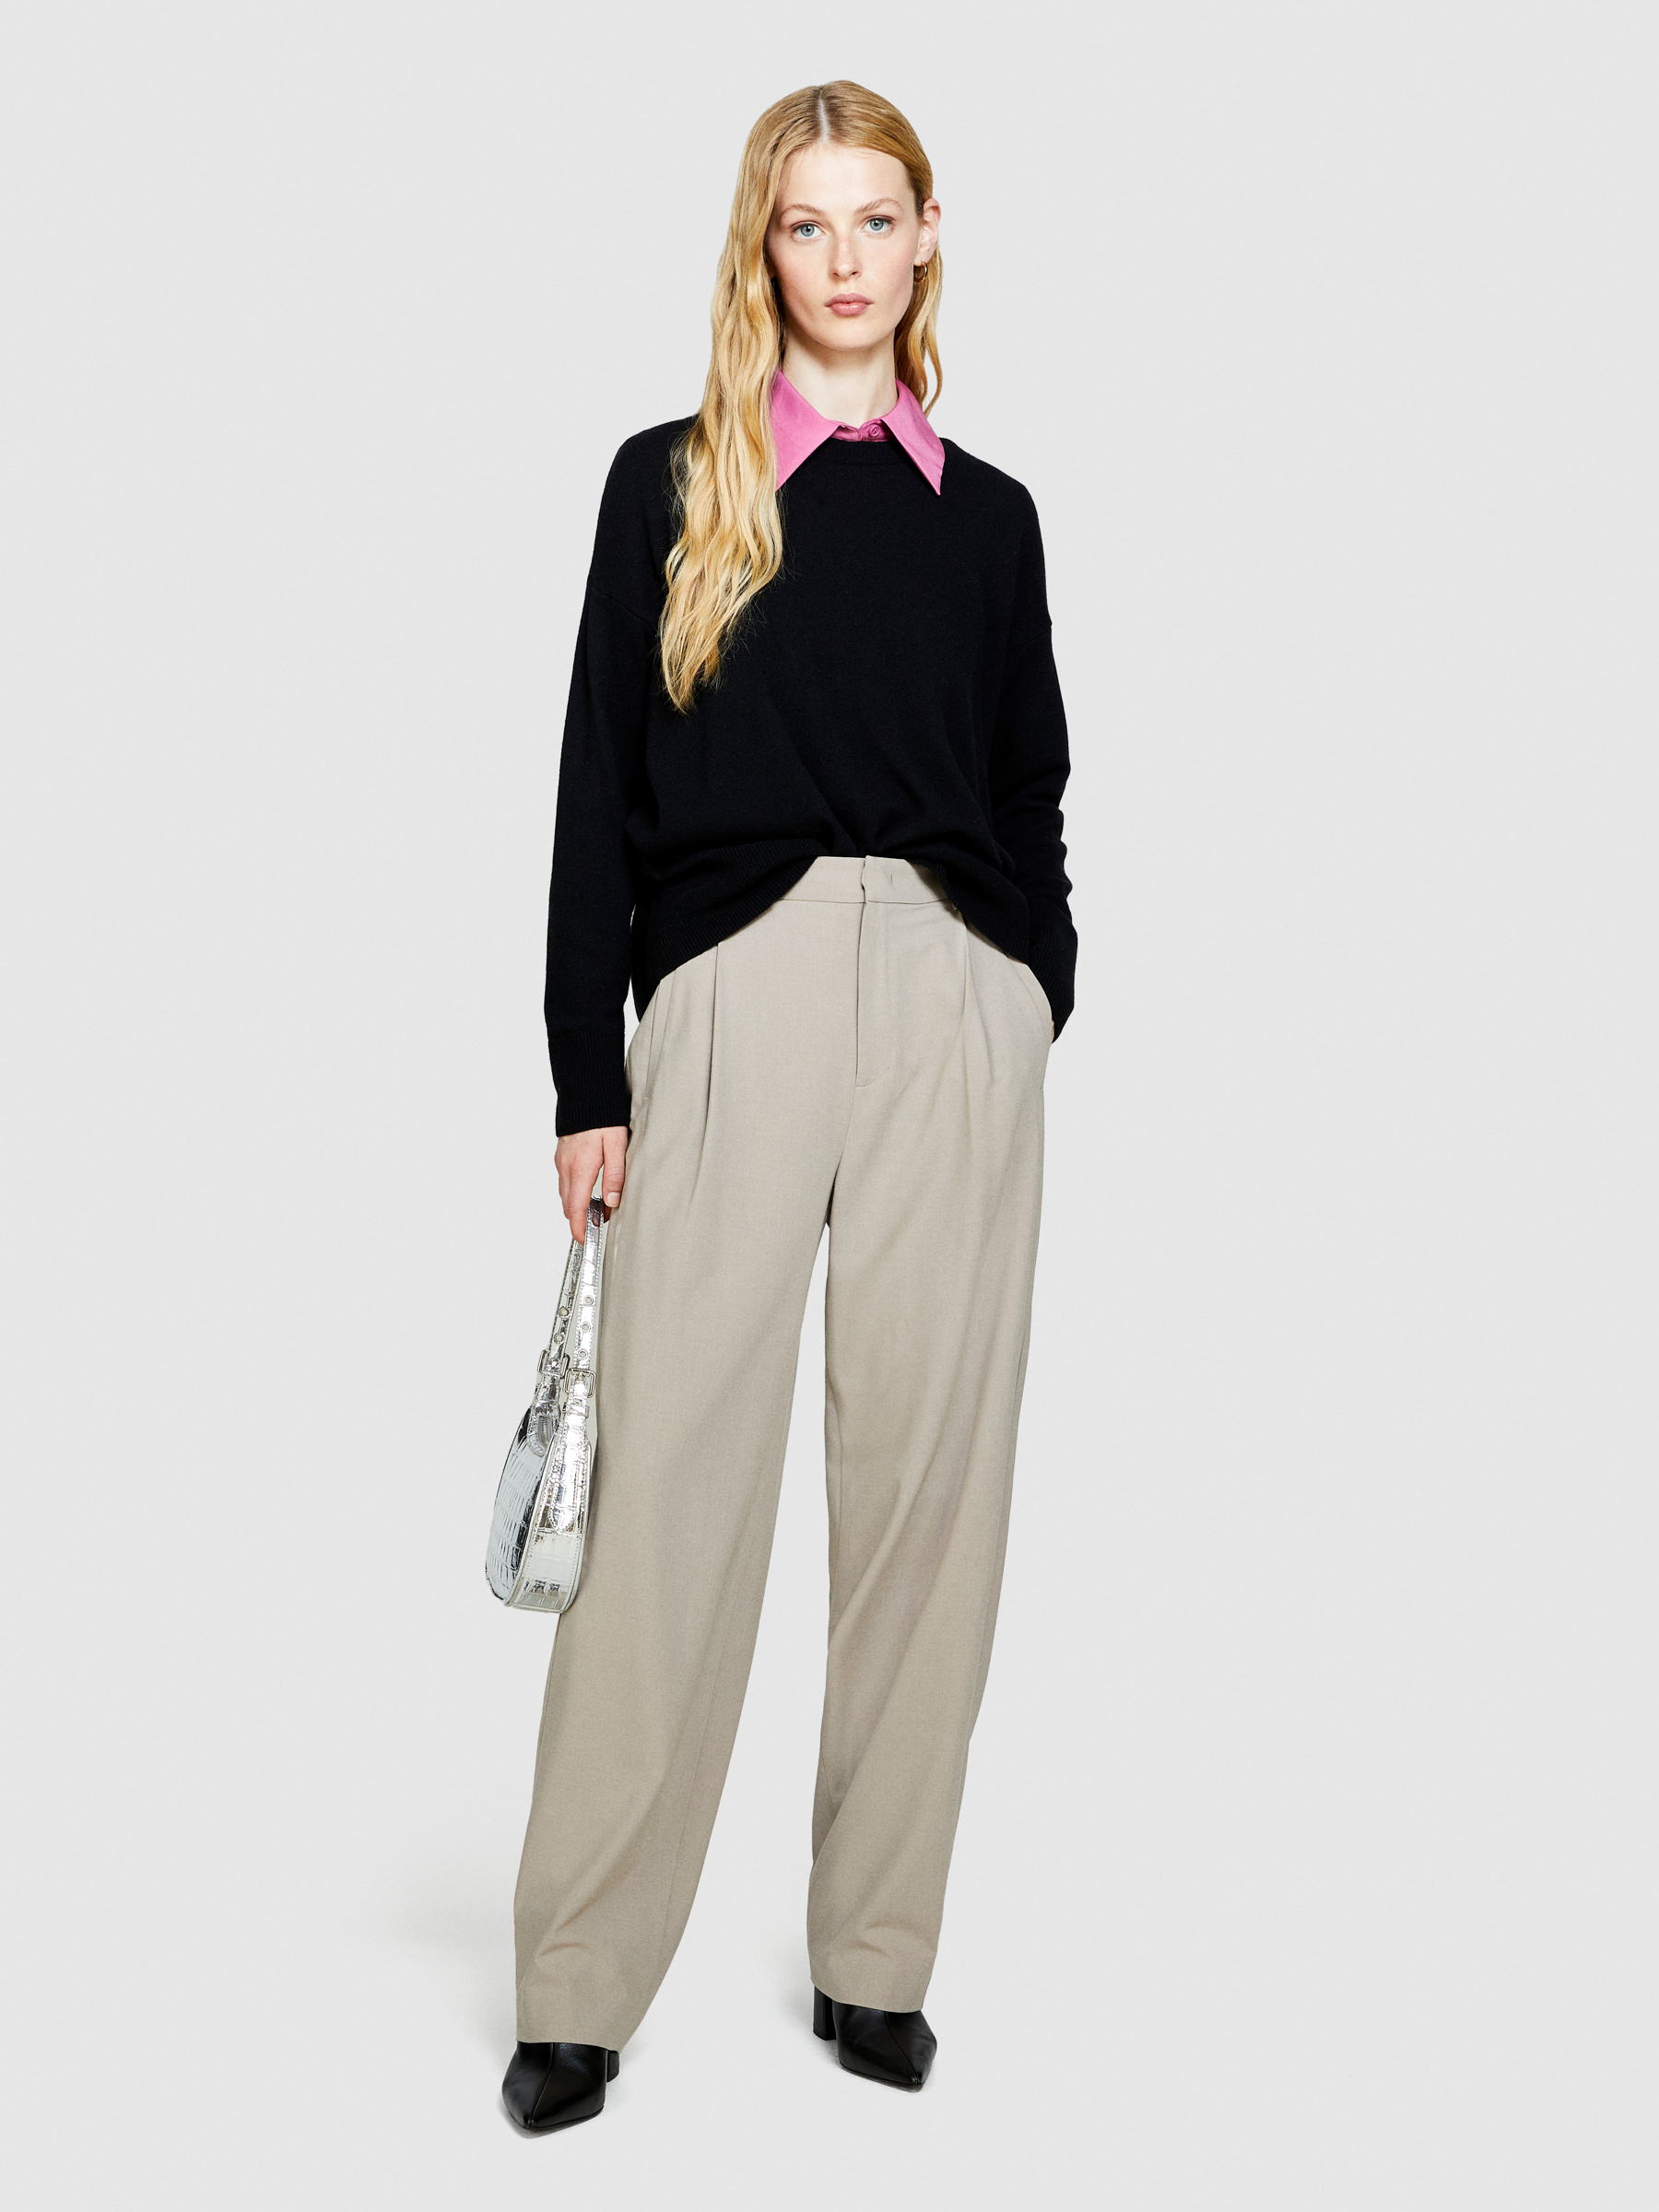 Sisley - Boxy Fit Sweater, Woman, Black, Size: XS